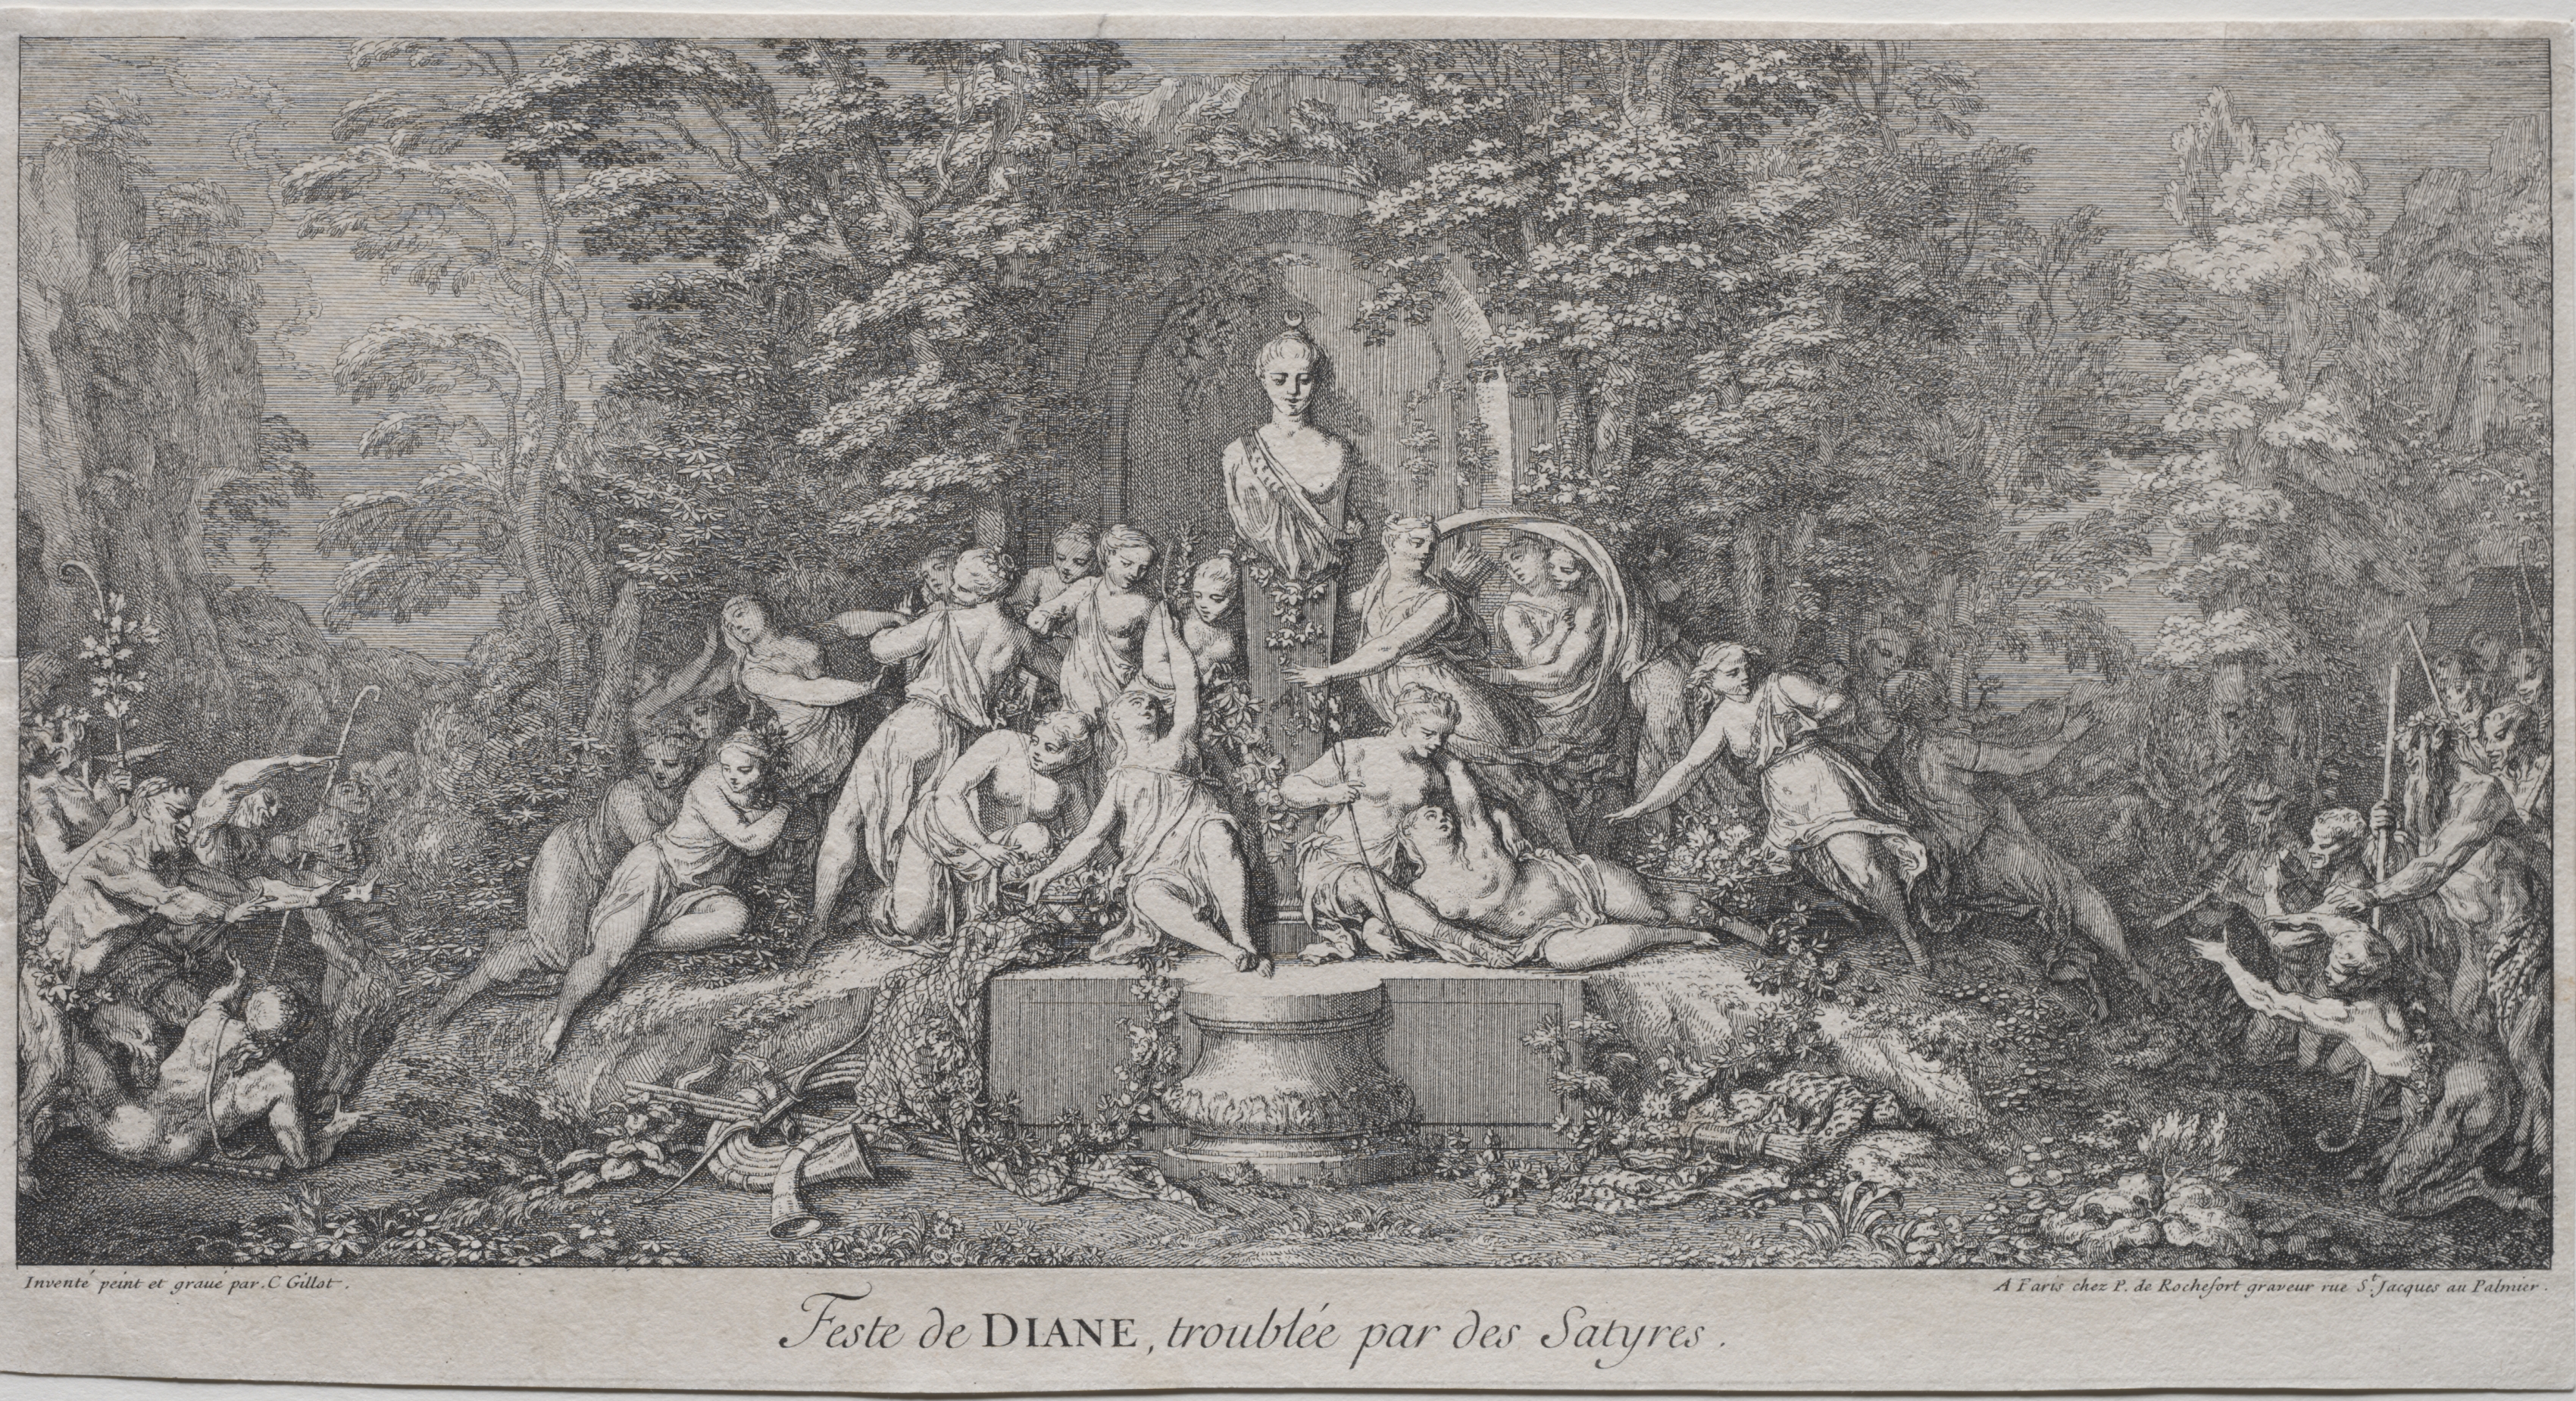 The Four Festivals:  Festival of Diana